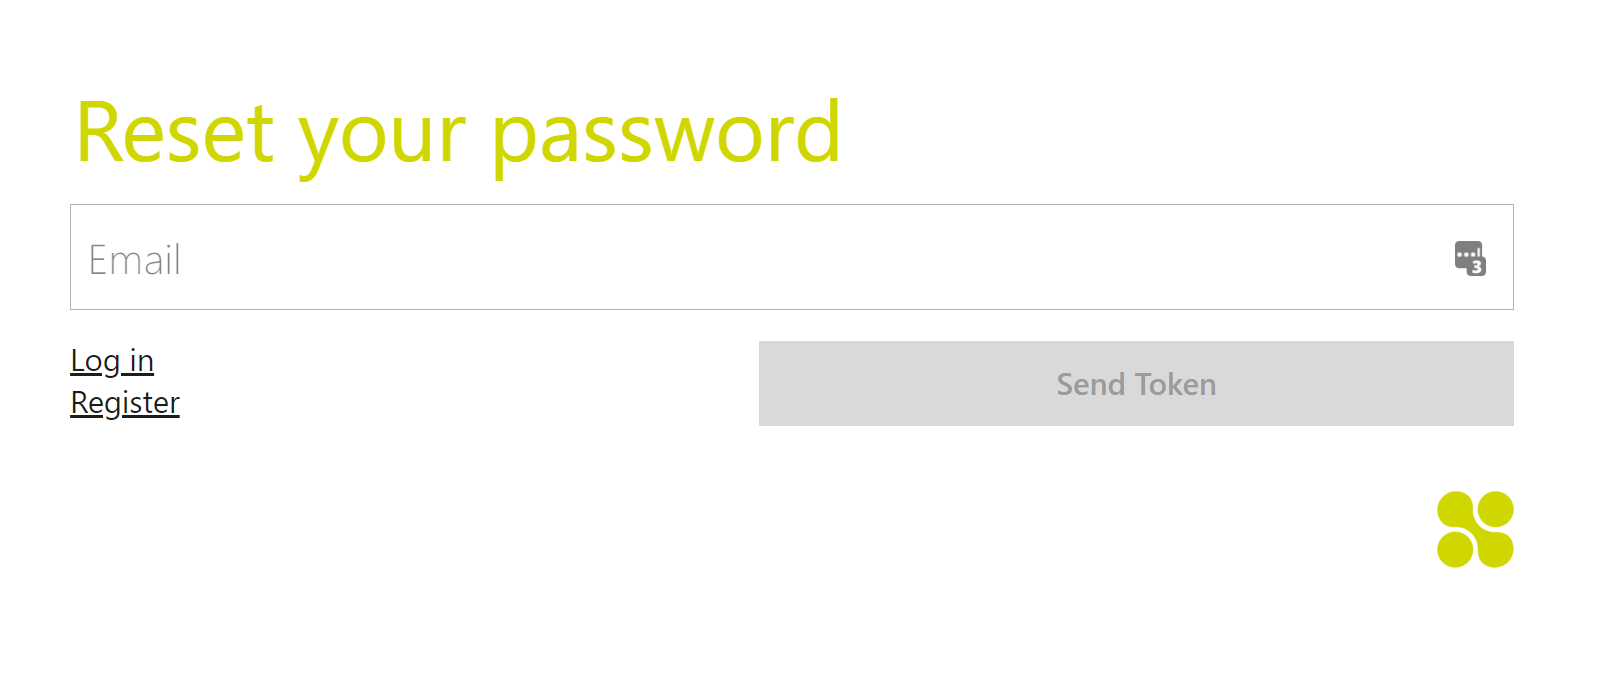 How do I reset my password?